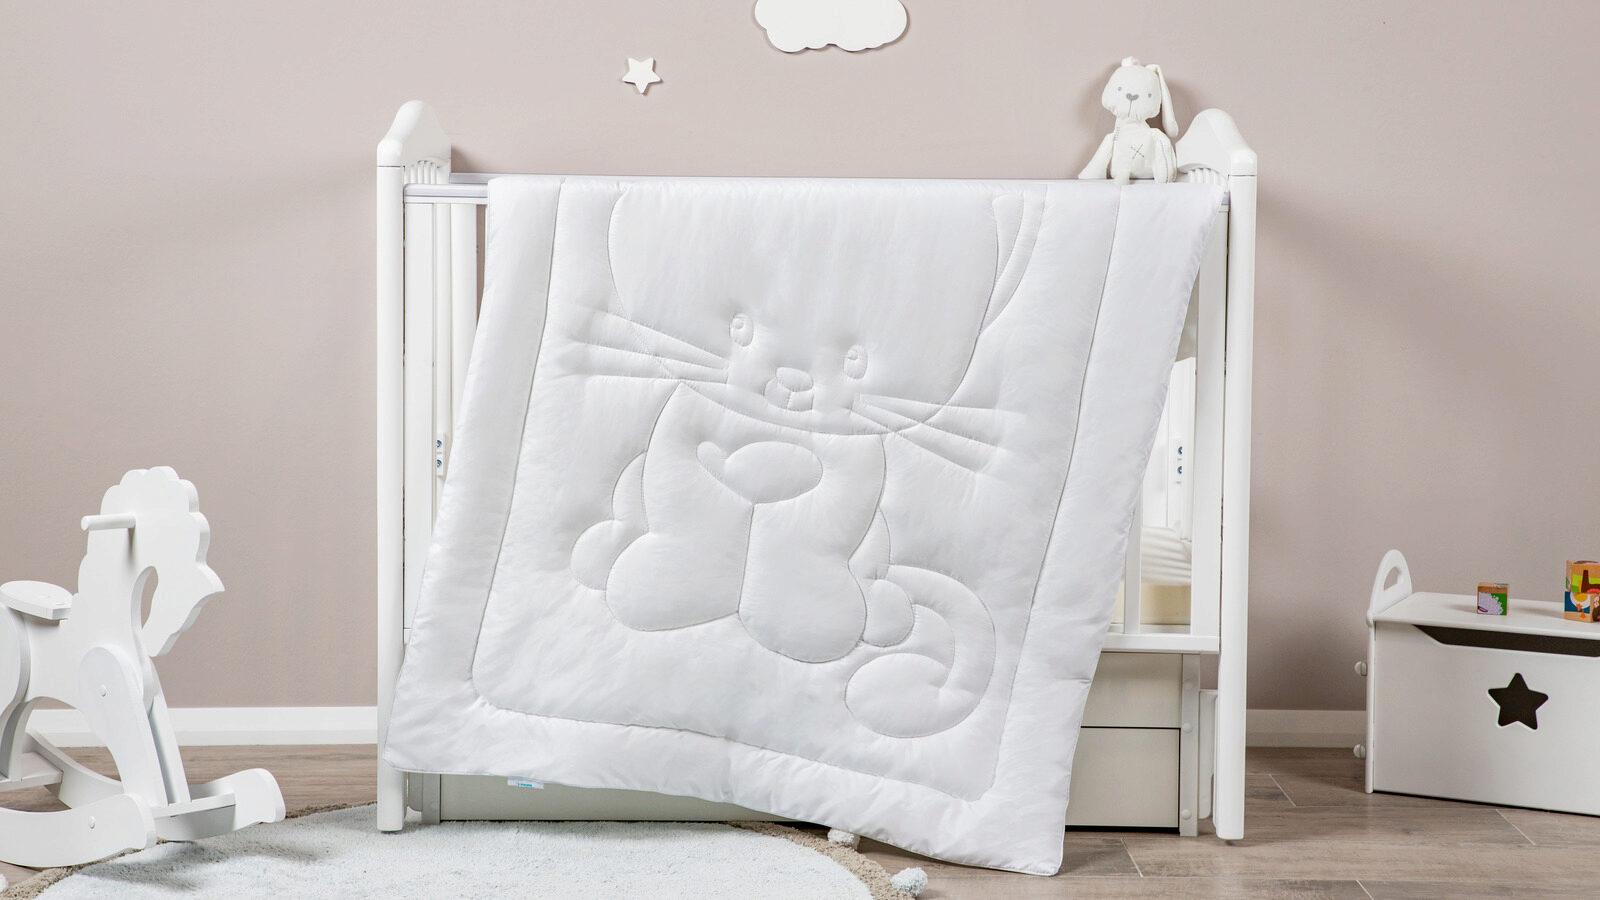 Детское одеяло Little Kitty главная одежда сумка сумка органайзер портативный нетканый ткань одеяло